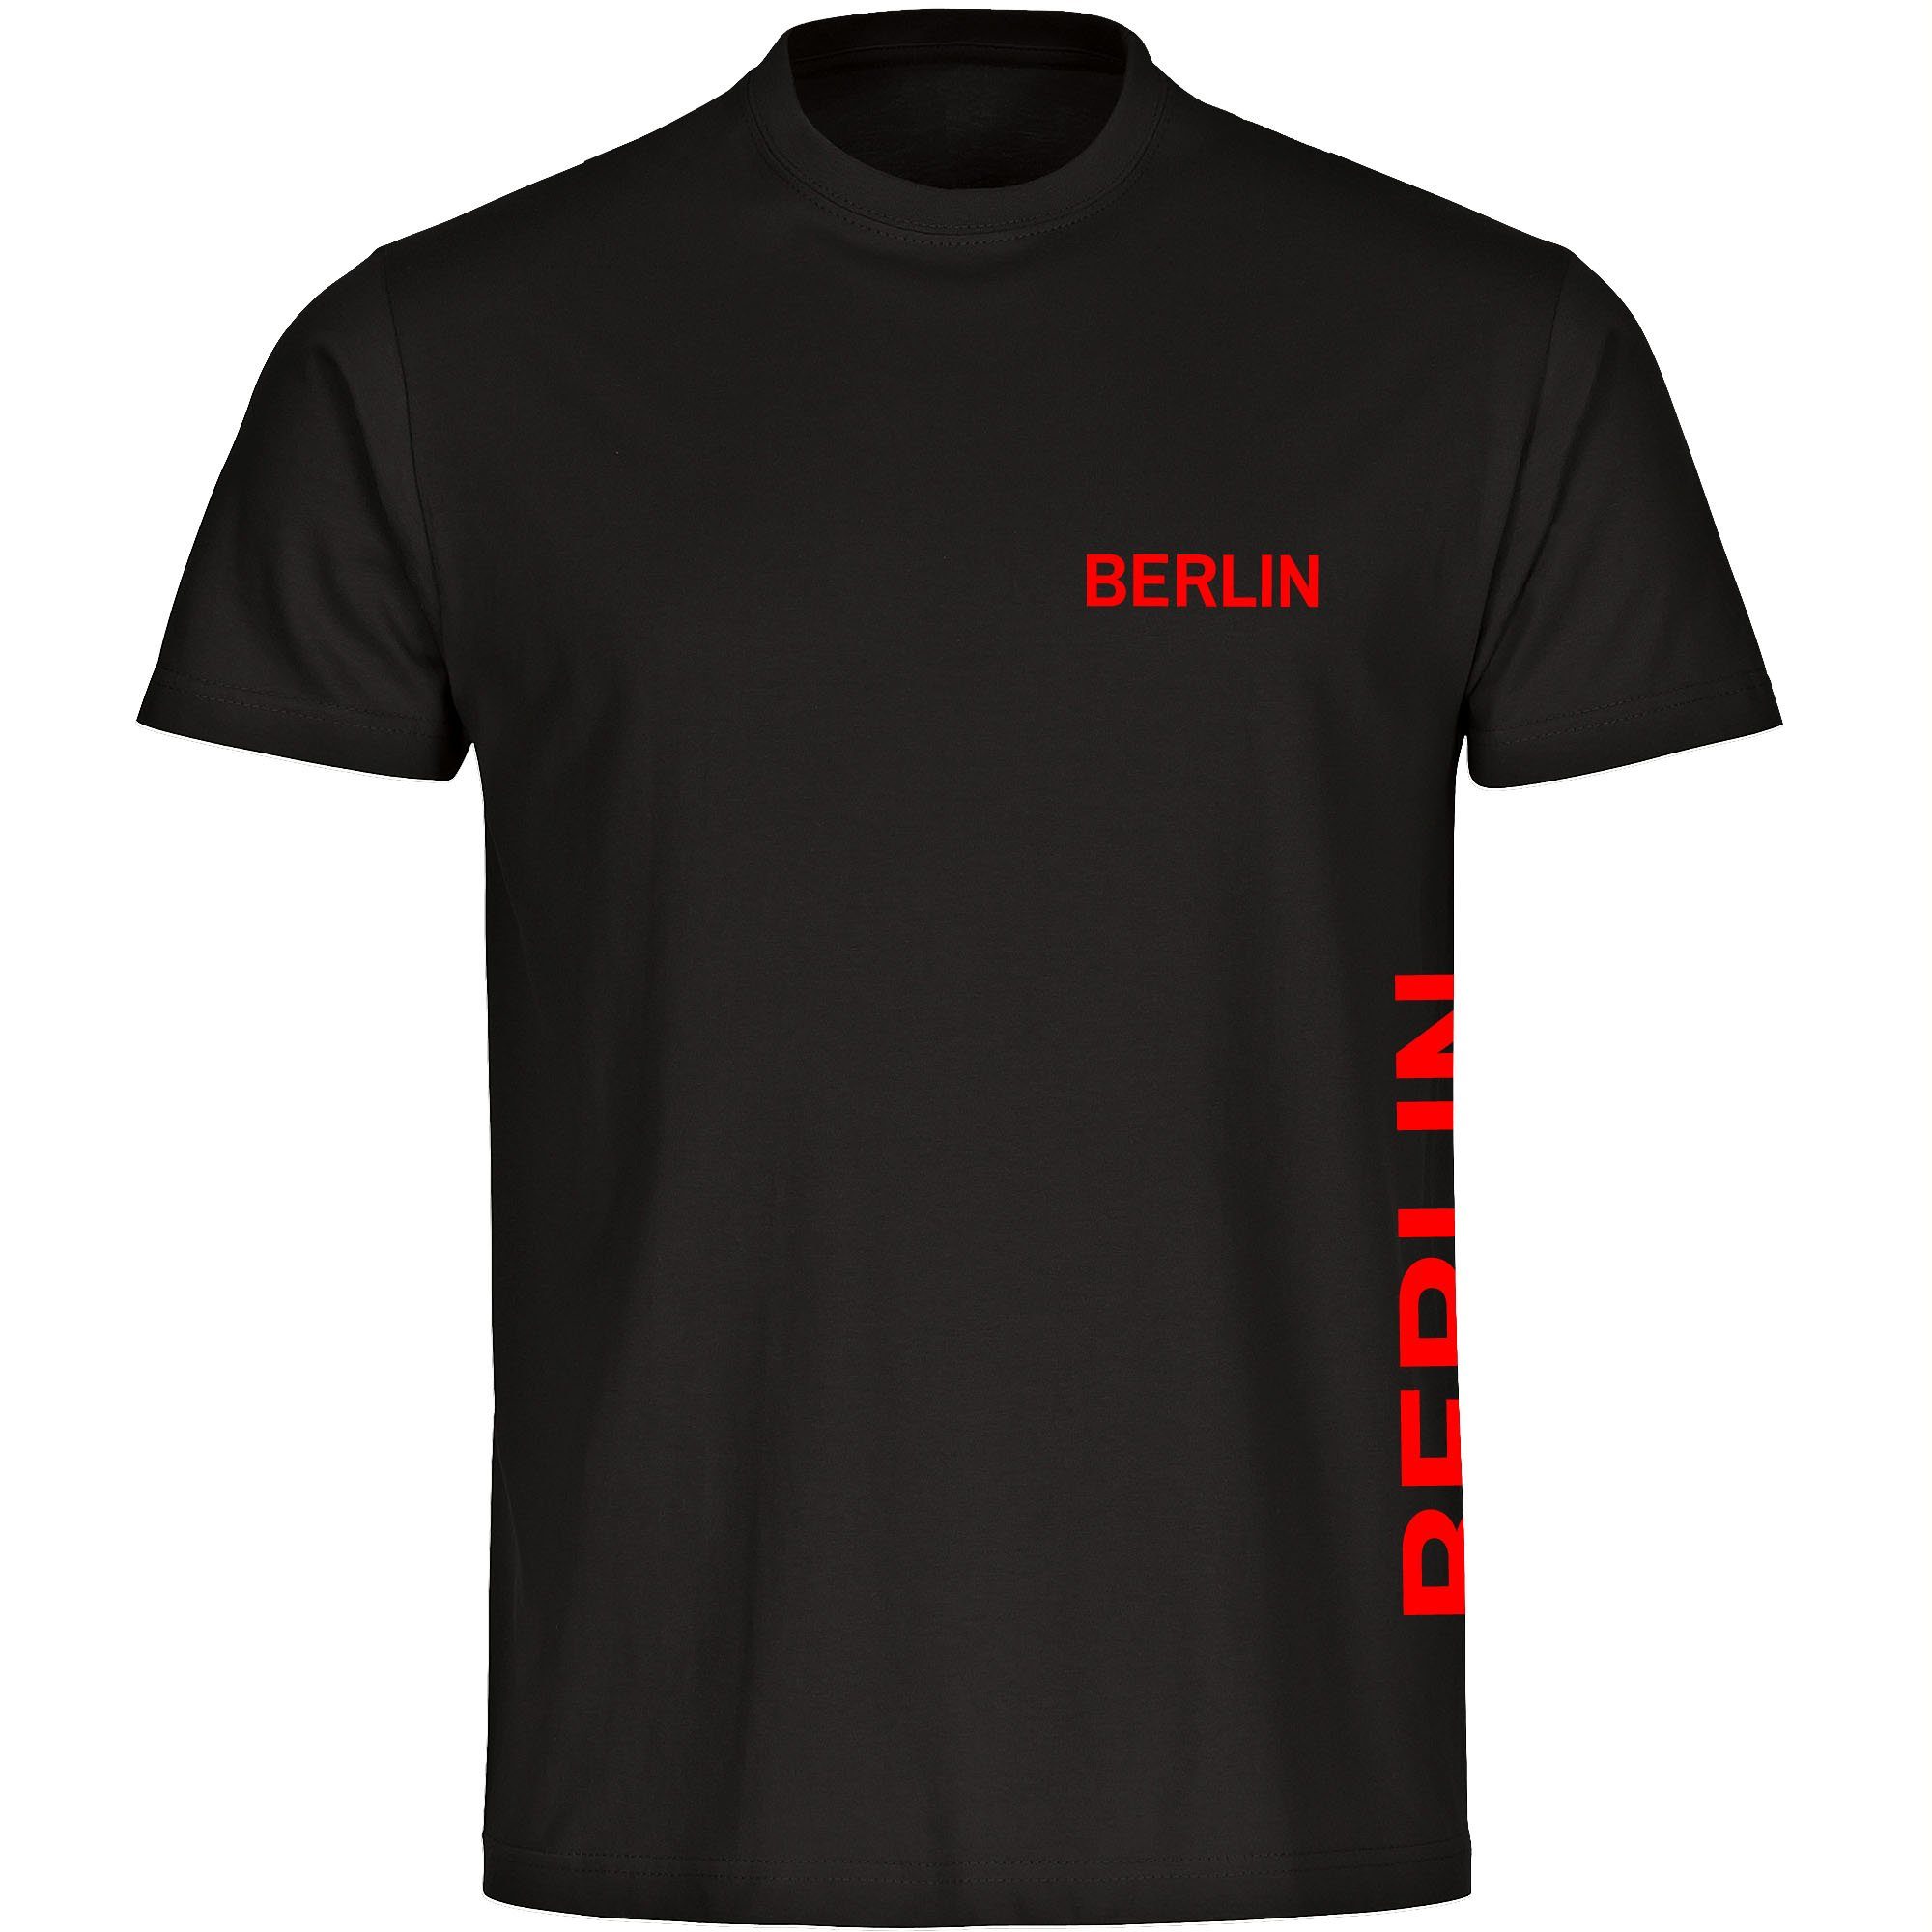 multifanshop T-Shirt Herren Berlin rot - Brust & Seite - Männer